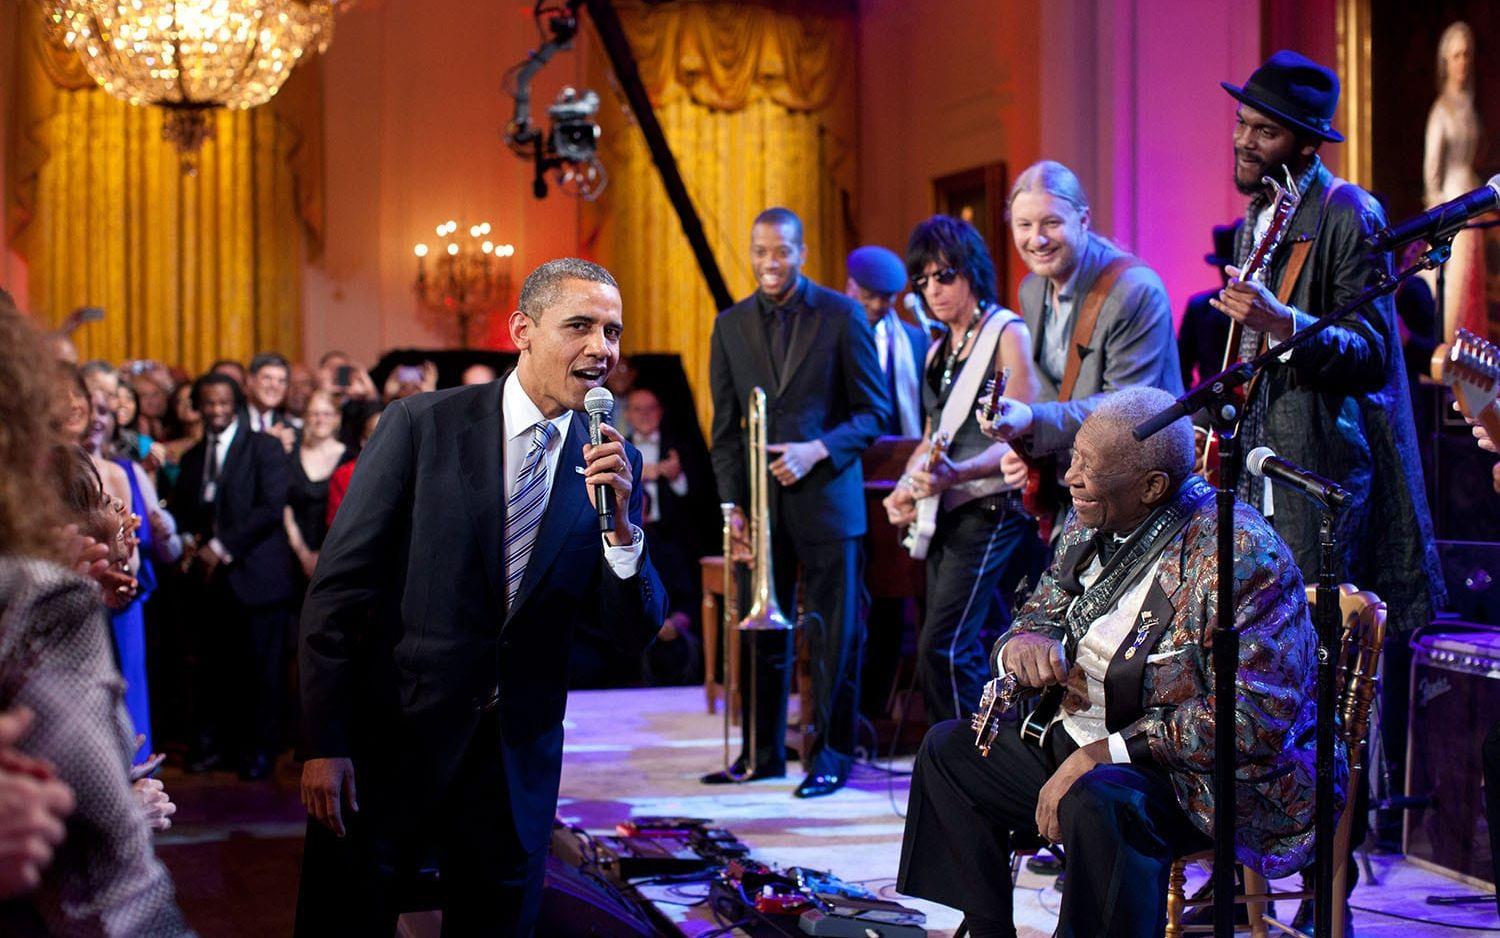 21 februari, 2012: Påhejad av blueslegendaren BB King går Obama upp och sjung  "Sweet home Chicago" under en konsertkväll i Vita Huset.